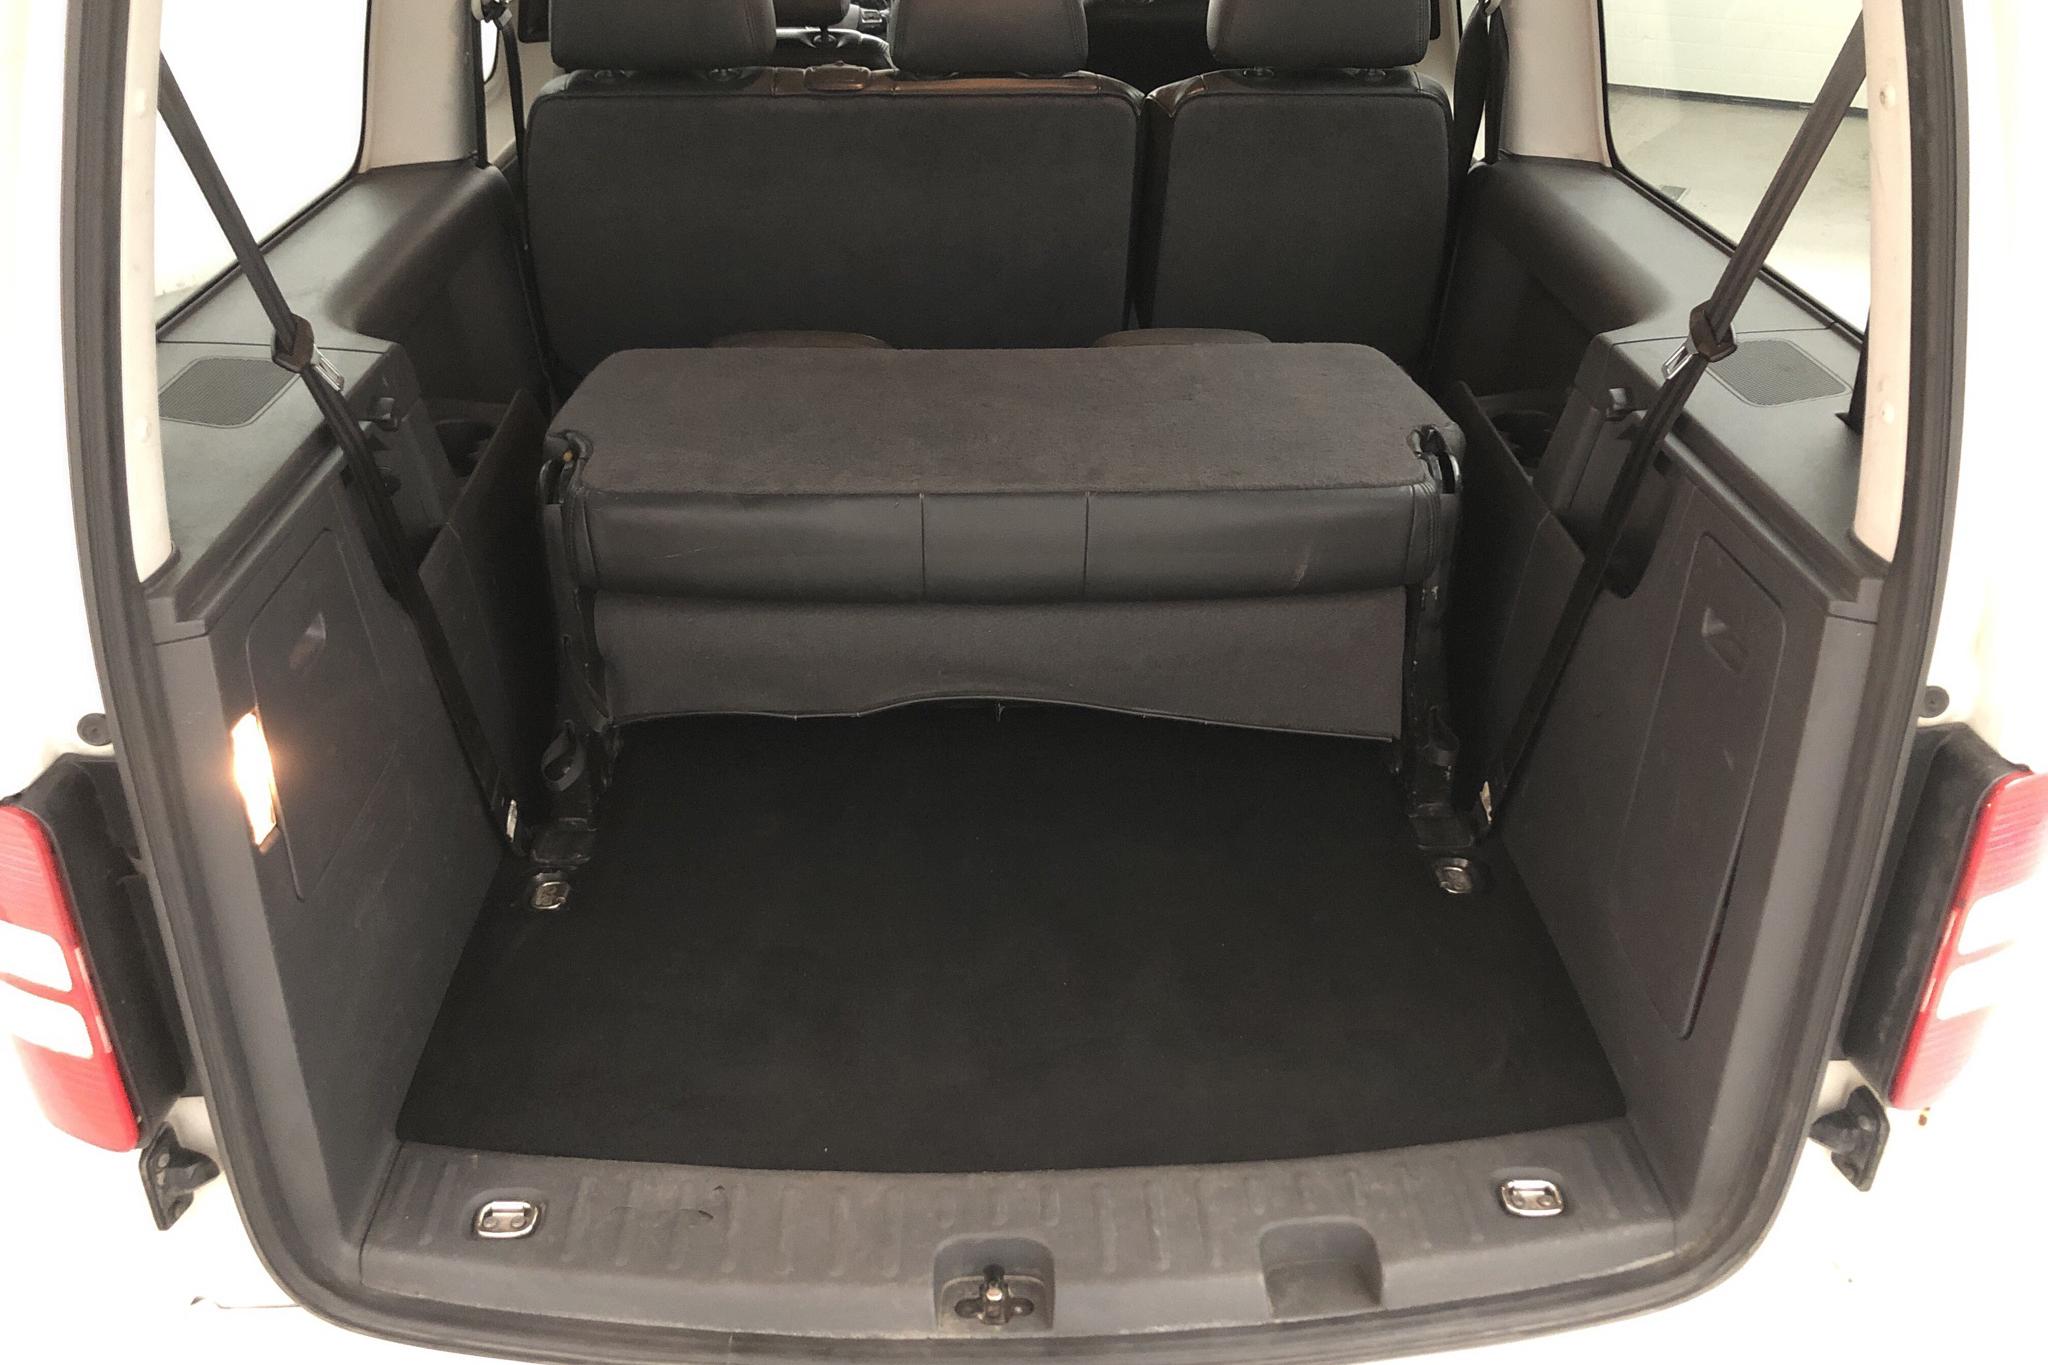 VW Caddy MPV Maxi 2.0 TDI (140hk) - 56 499 mil - Automat - vit - 2012